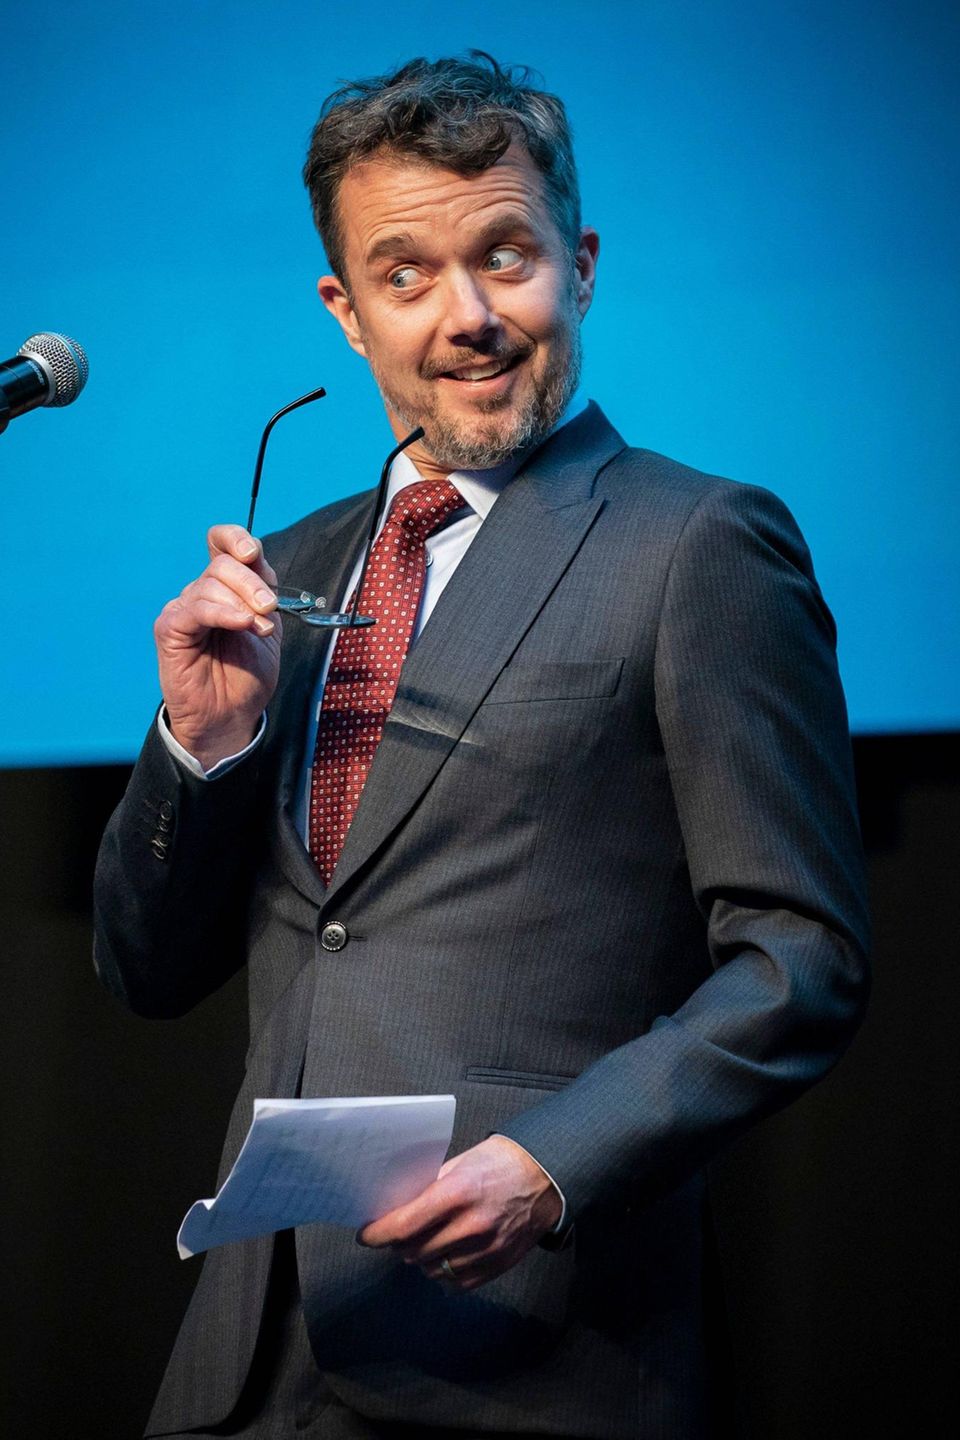 Kronprinz Frederik redet bei der Unternehmerpreis-Verleihung